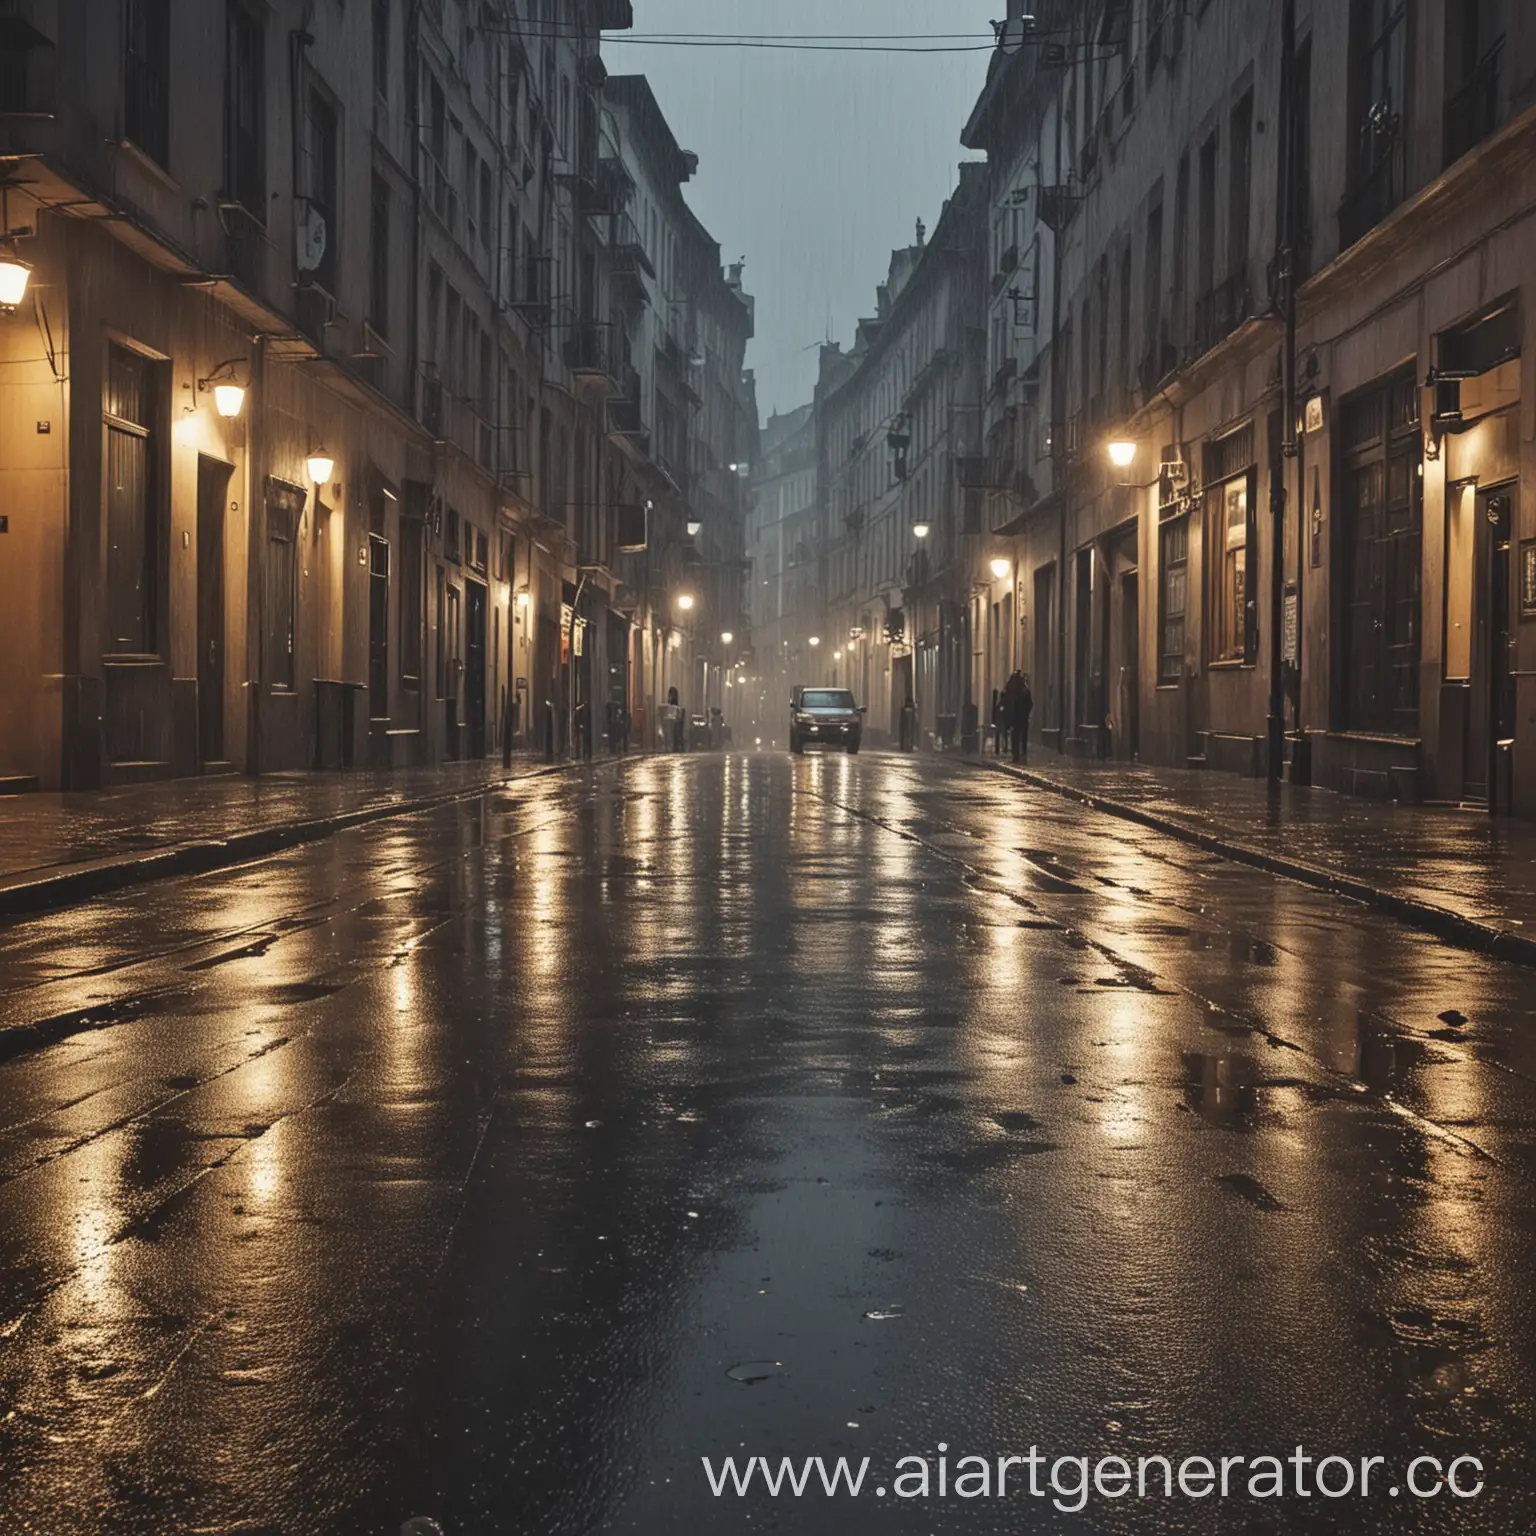 Rainy-Street-Scene-with-UmbrellaToting-Pedestrians